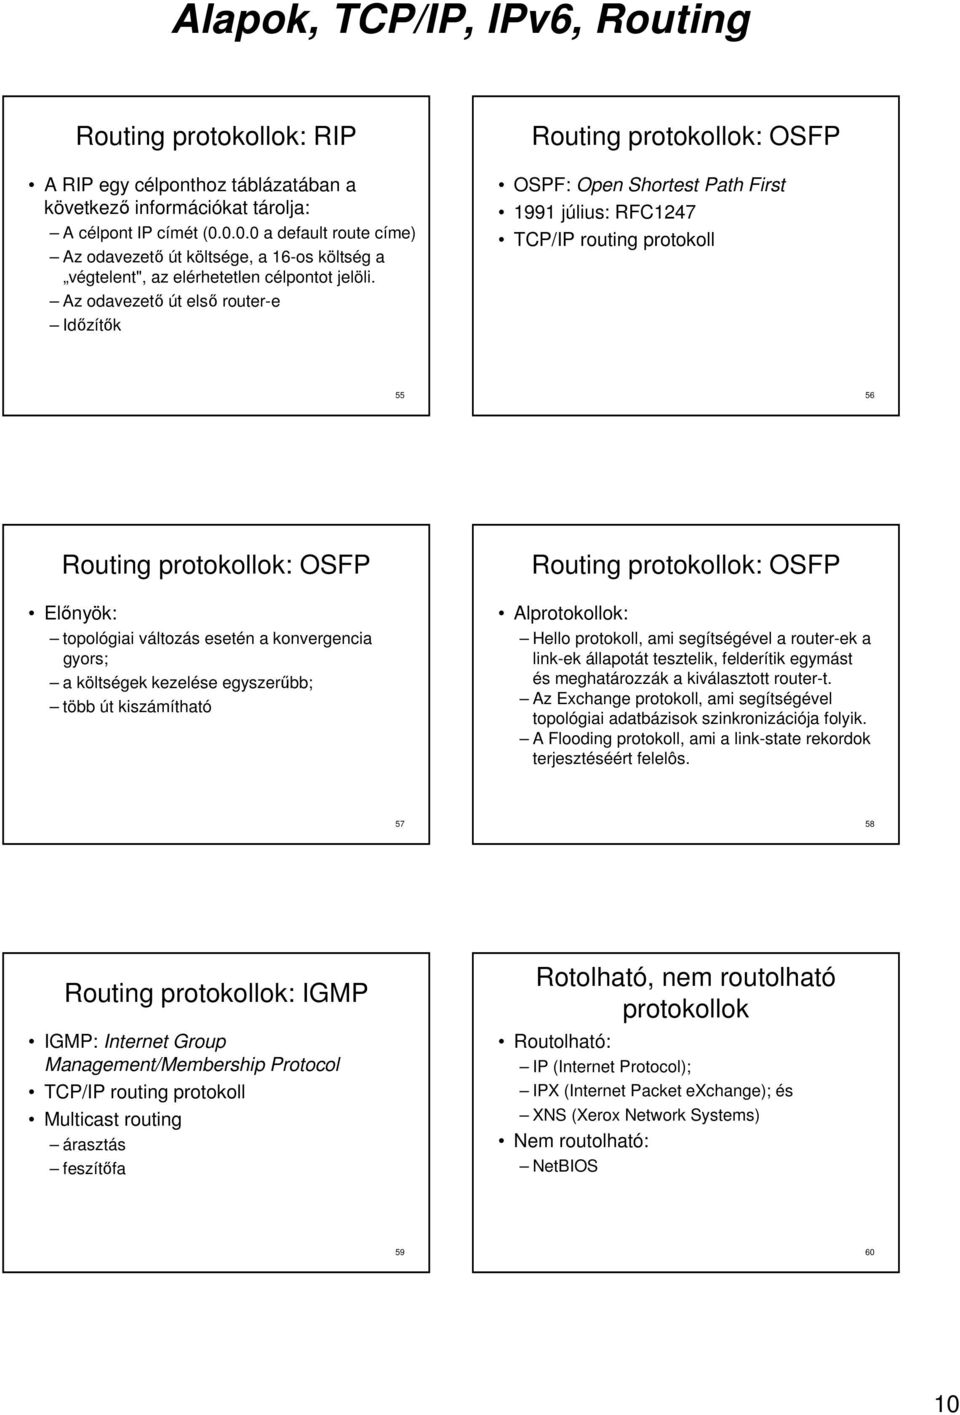 Az odavezetı út elsı router-e Idızítık protokollok: OSFP OSPF: Open Shortest Path First 1991 július: RFC1247 TCP/IP routing protokoll 55 56 protokollok: OSFP Elınyök: topológiai változás esetén a